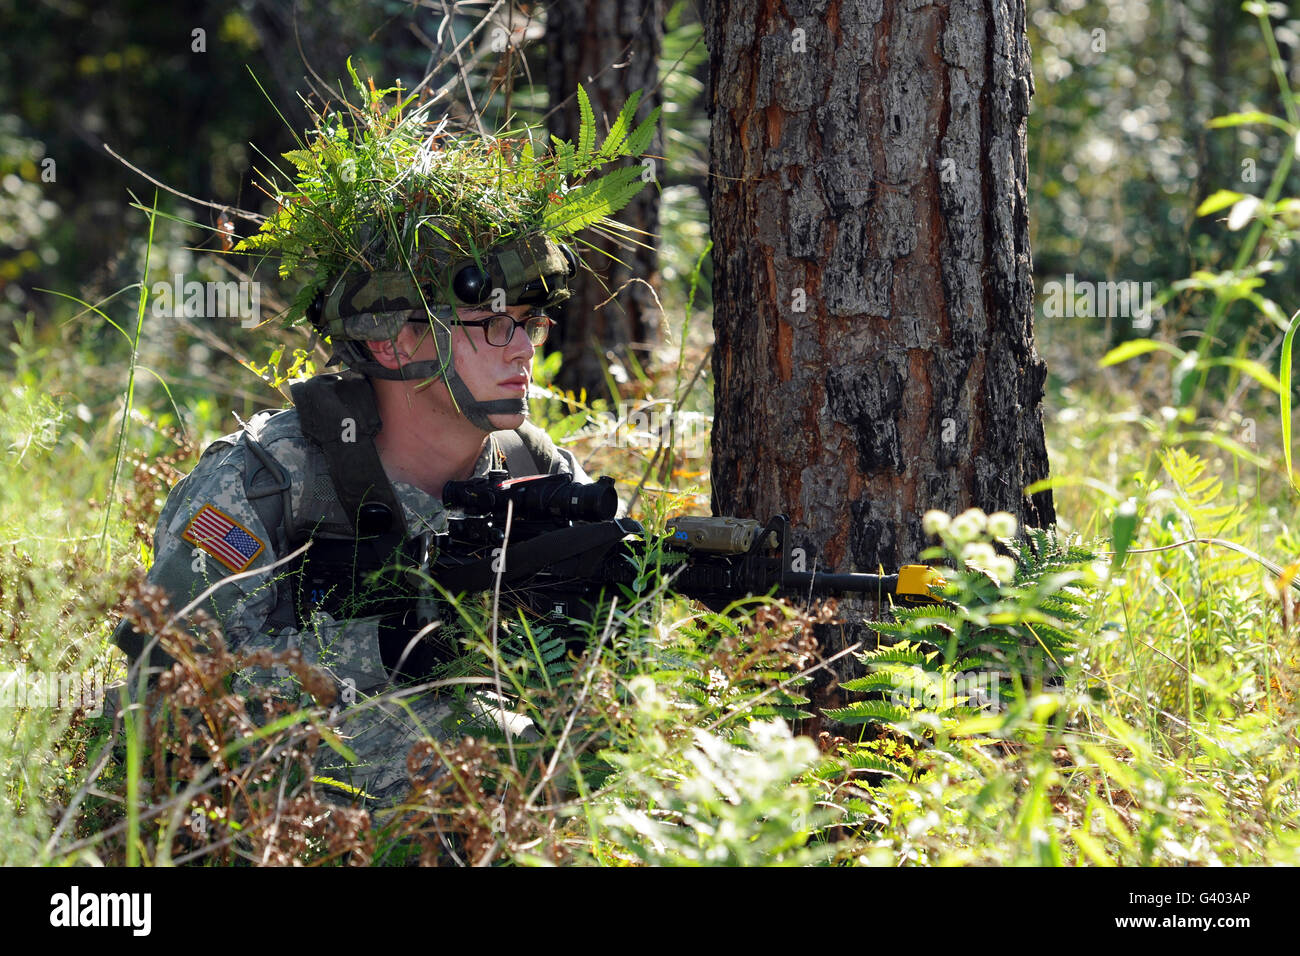 Ein Soldat geht in Deckung neben einem Baum für Sicherheit zu sorgen. Stockfoto